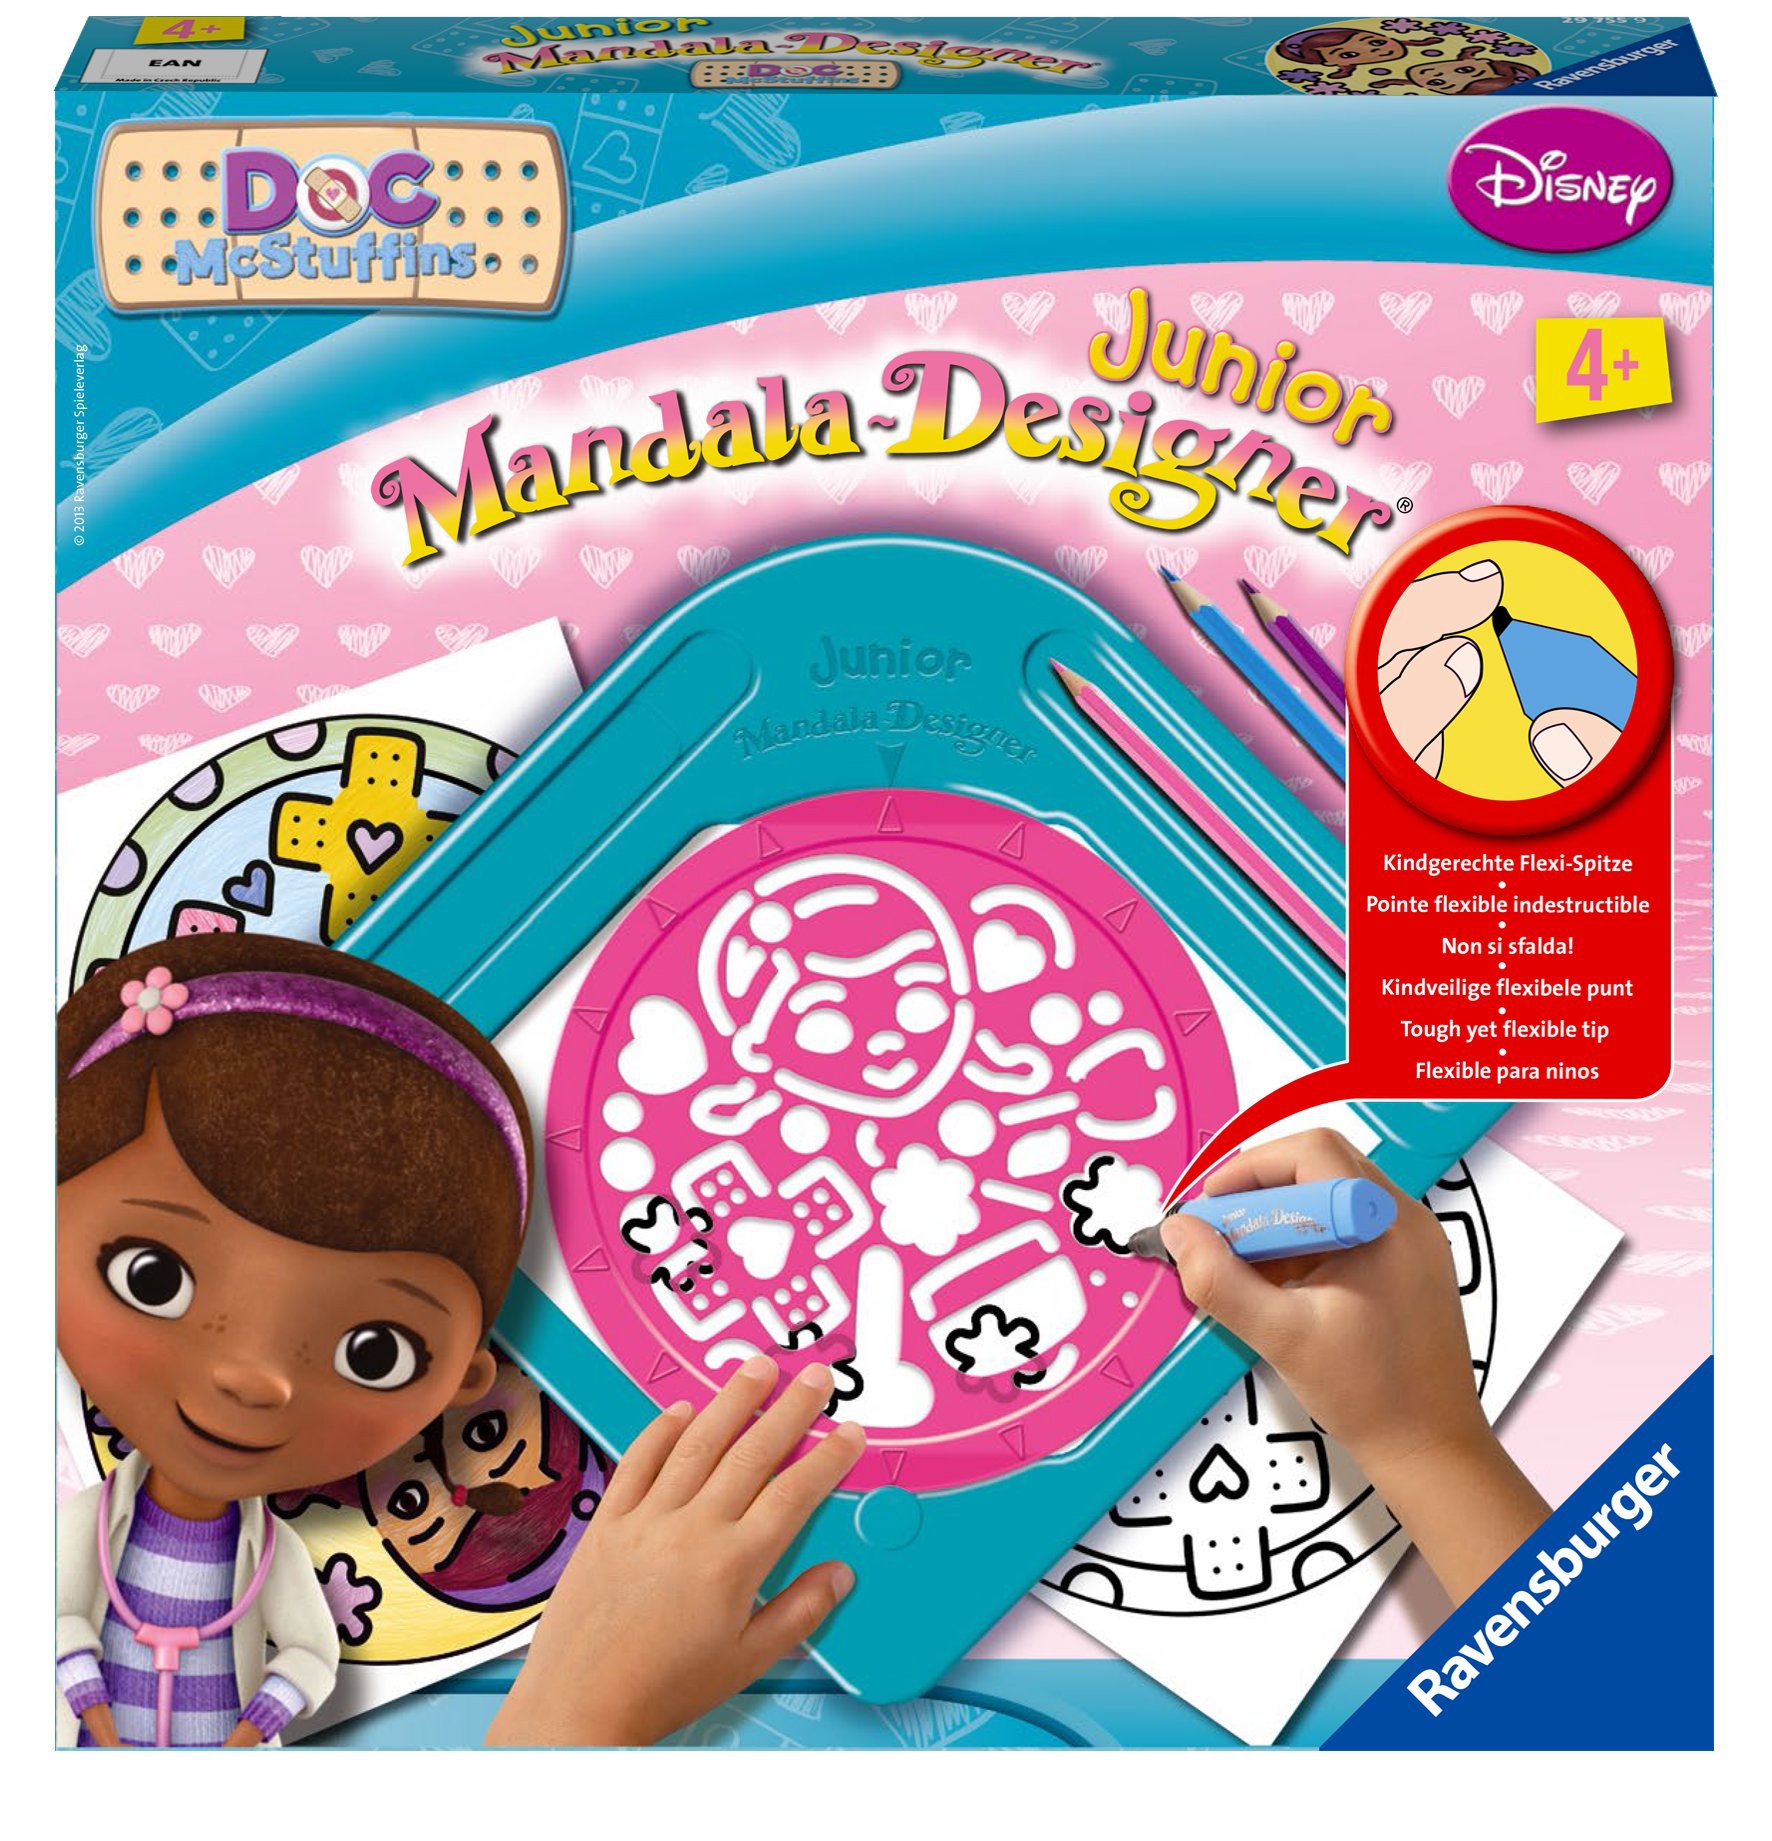 Disney Doc Mcstuffins 'Junior' Mandala Designer Puzzle